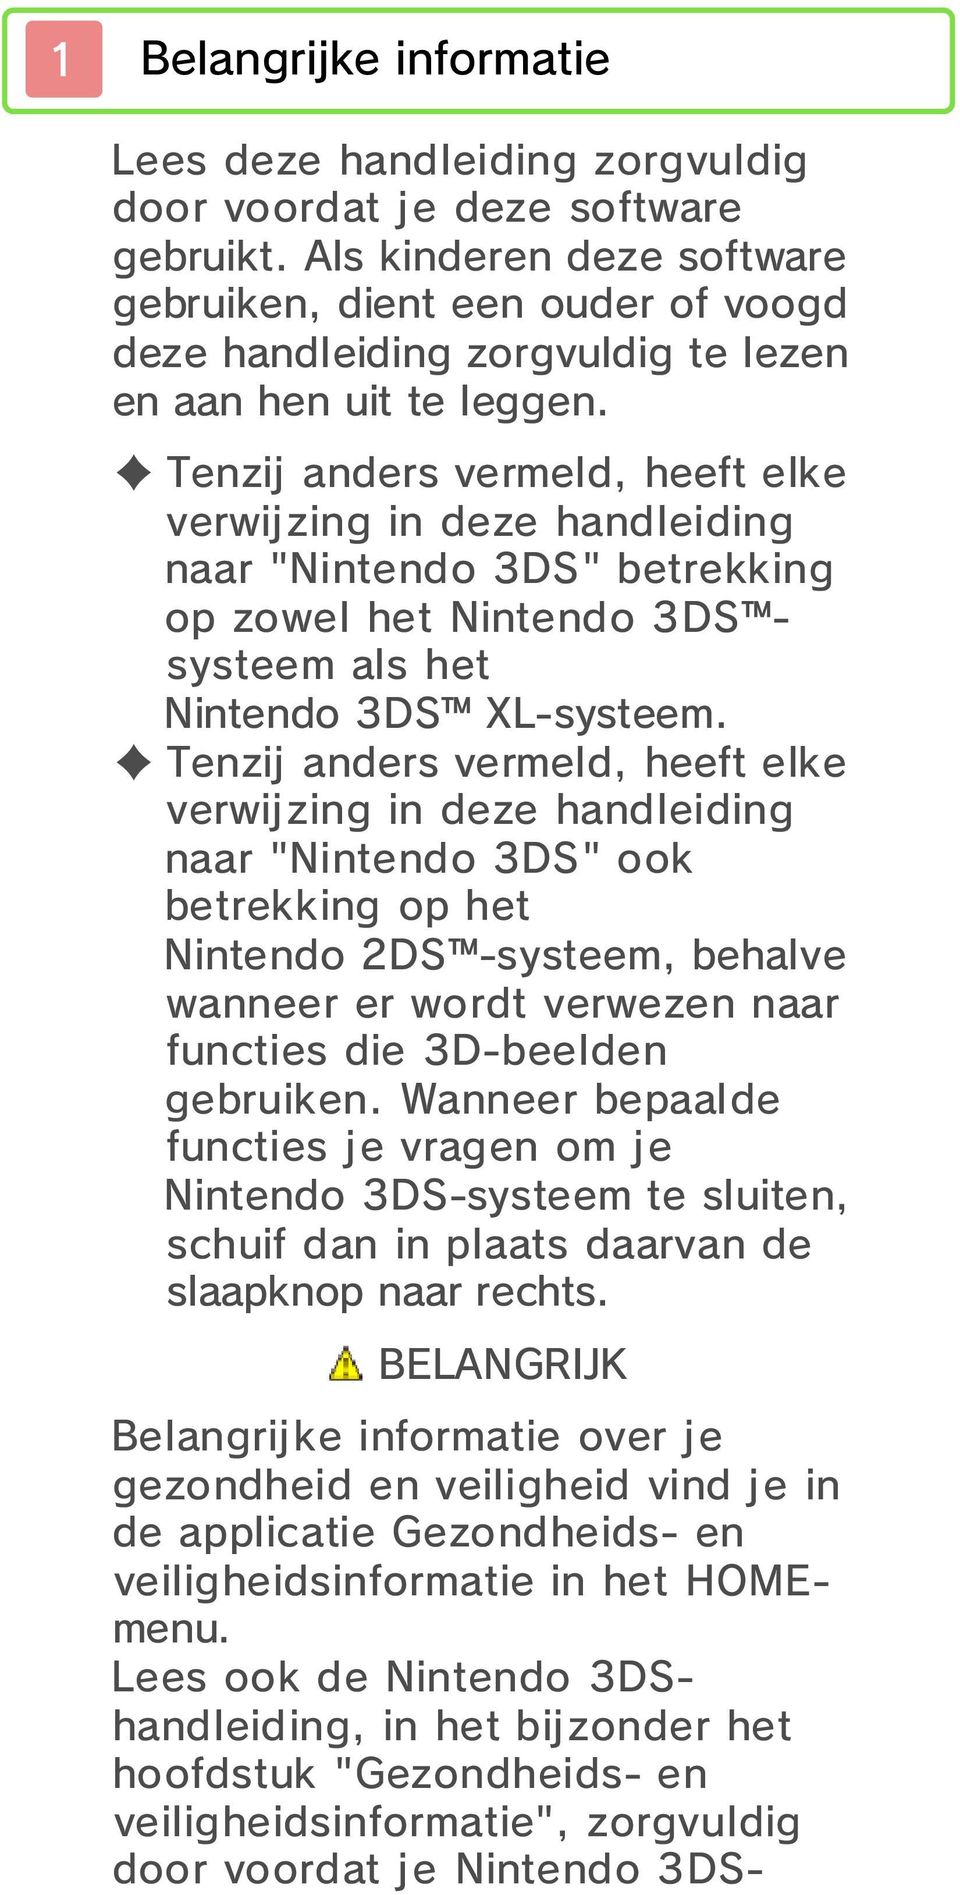 Tenzij anders vermeld, heeft elke verwijzing in deze handleiding naar "Nintendo 3DS" betrekking op zowel het Nintendo 3DS systeem als het Nintendo 3DS XL-systeem.